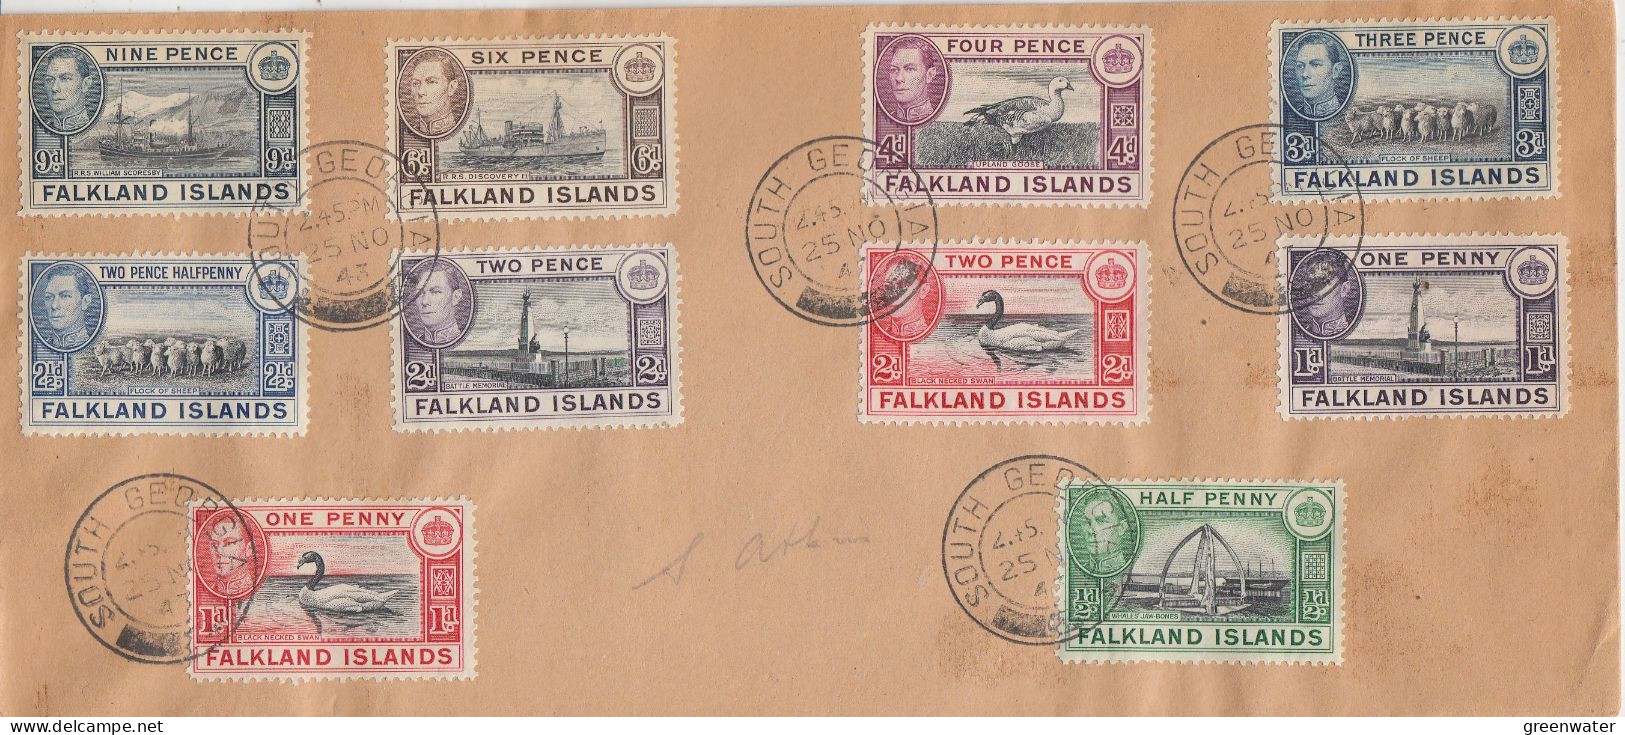 Falkland Islands Cover  With 10v Pictorials Ca South Georgia 25 NOV 1943 (FG151) - Georgia Del Sud